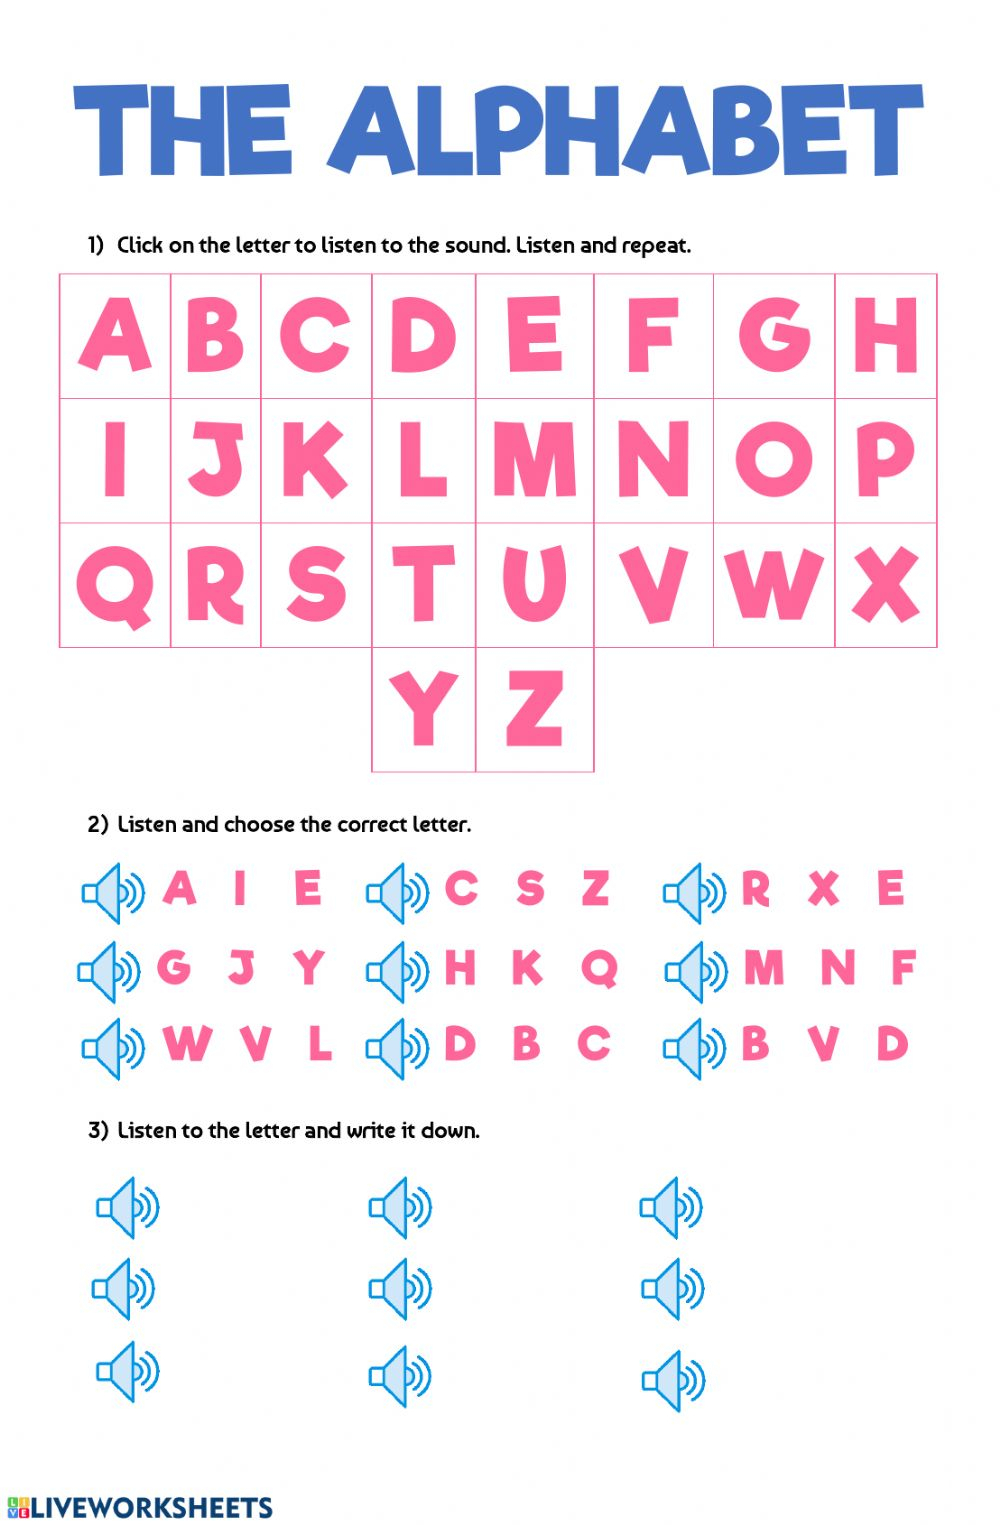 The Alphabet: Alphabet Worksheet intended for Alphabet Worksheets Esl Pdf